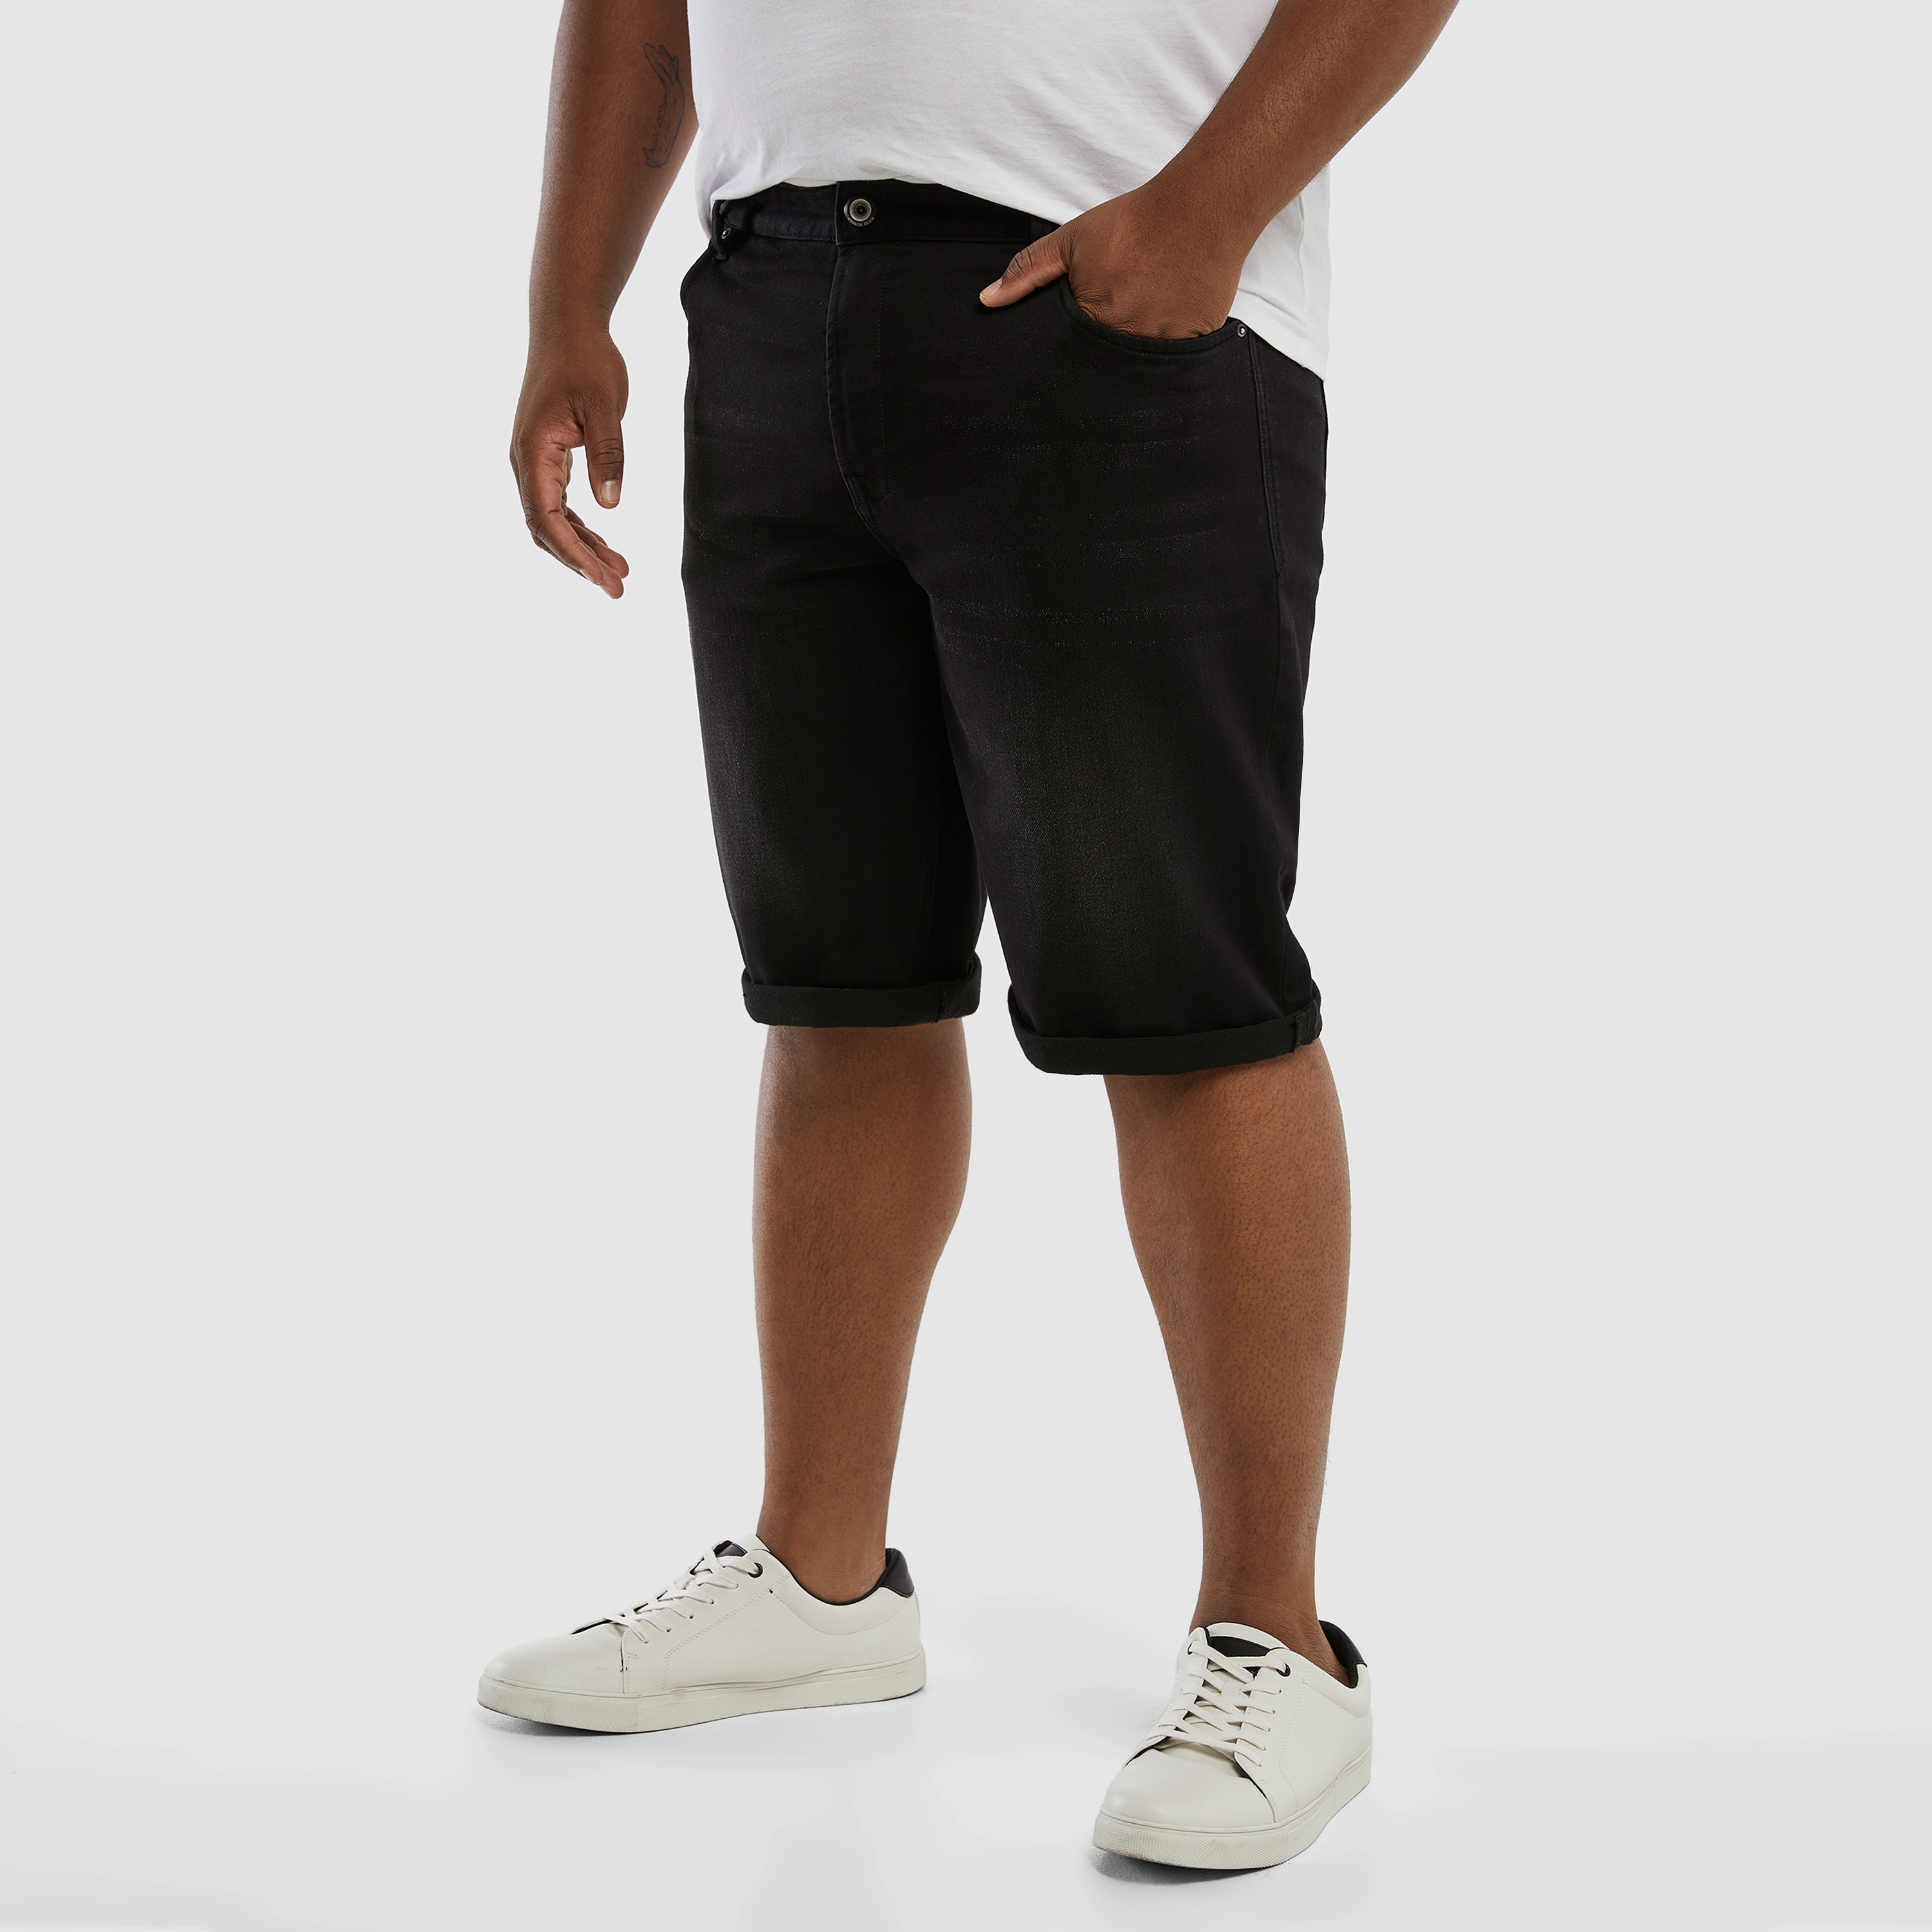 Levi's Wholesale Mens denim shorts assortment 24pcs. - United States, New -  The wholesale platform | Merkandi B2B